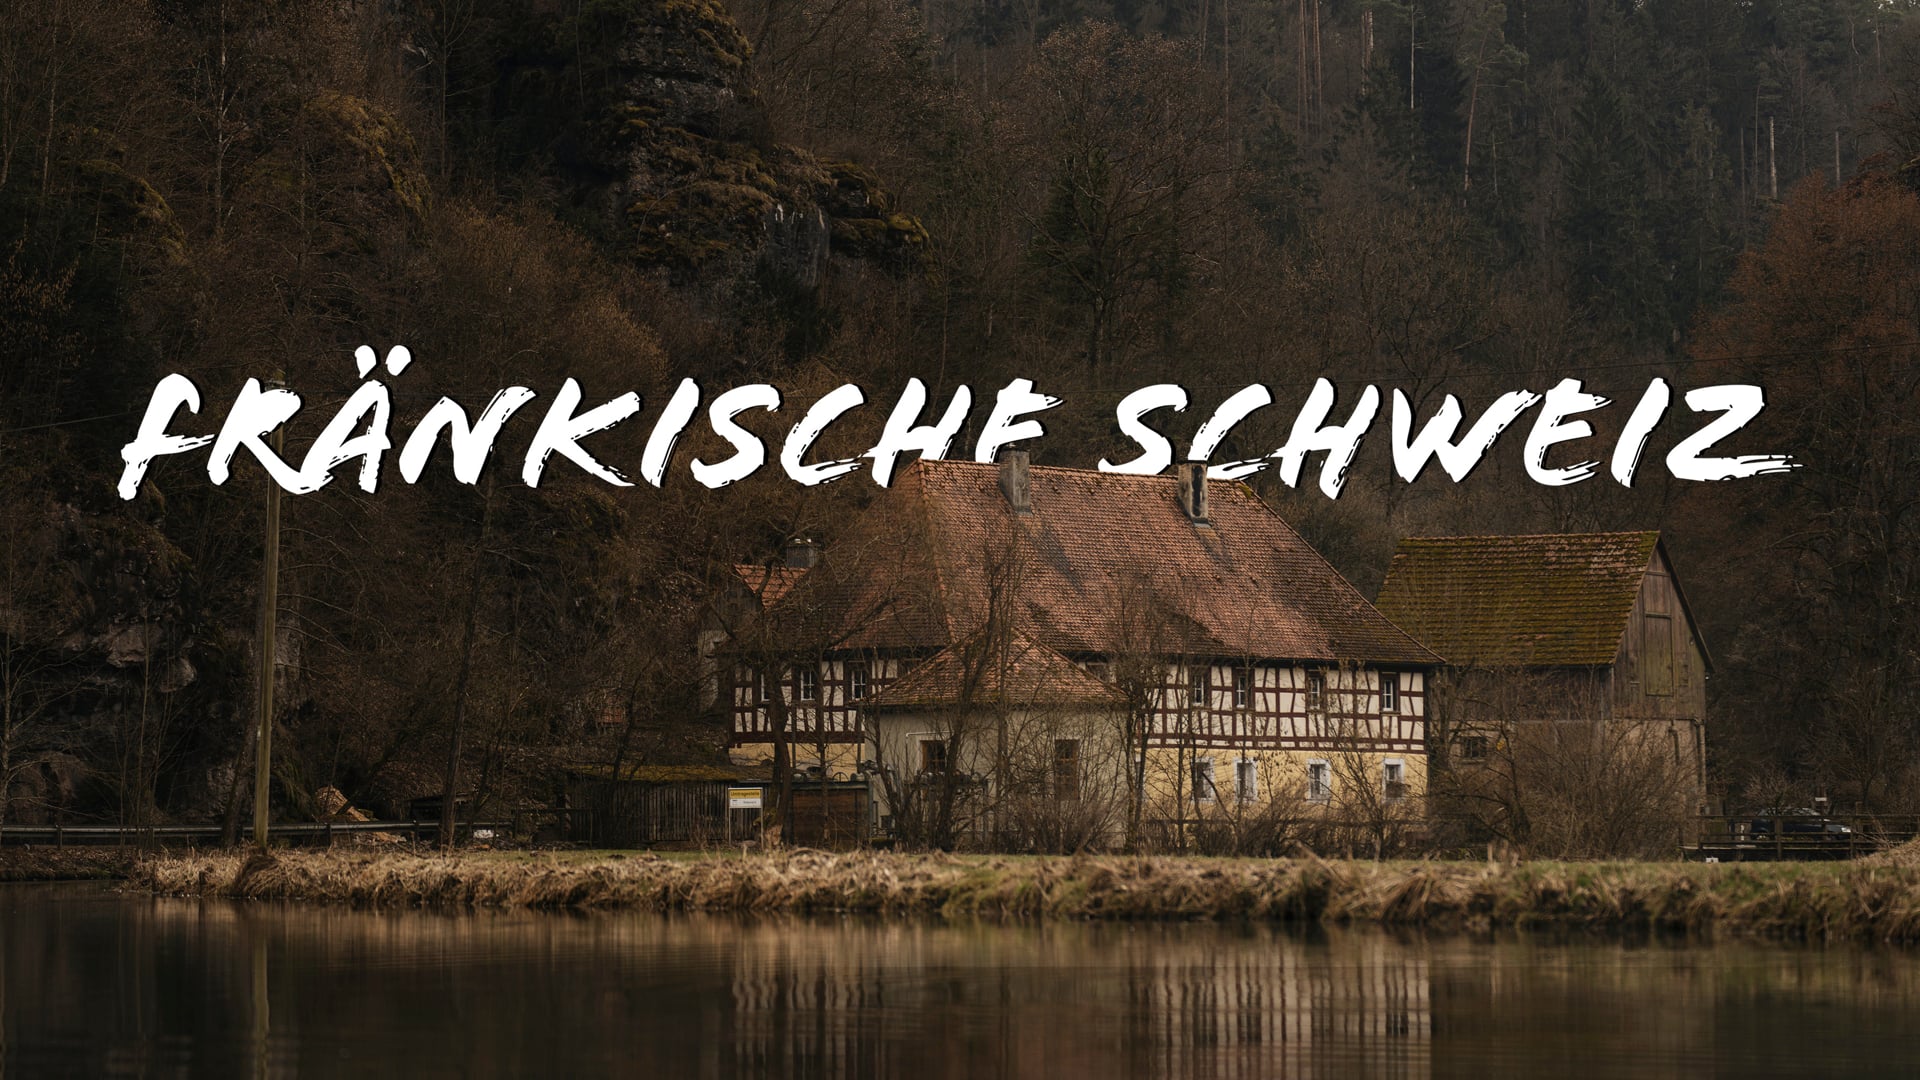 FRÄNKISCHE SCHWEIZ | Cinematic Video | 4K | A7SIII and S-Cinetone